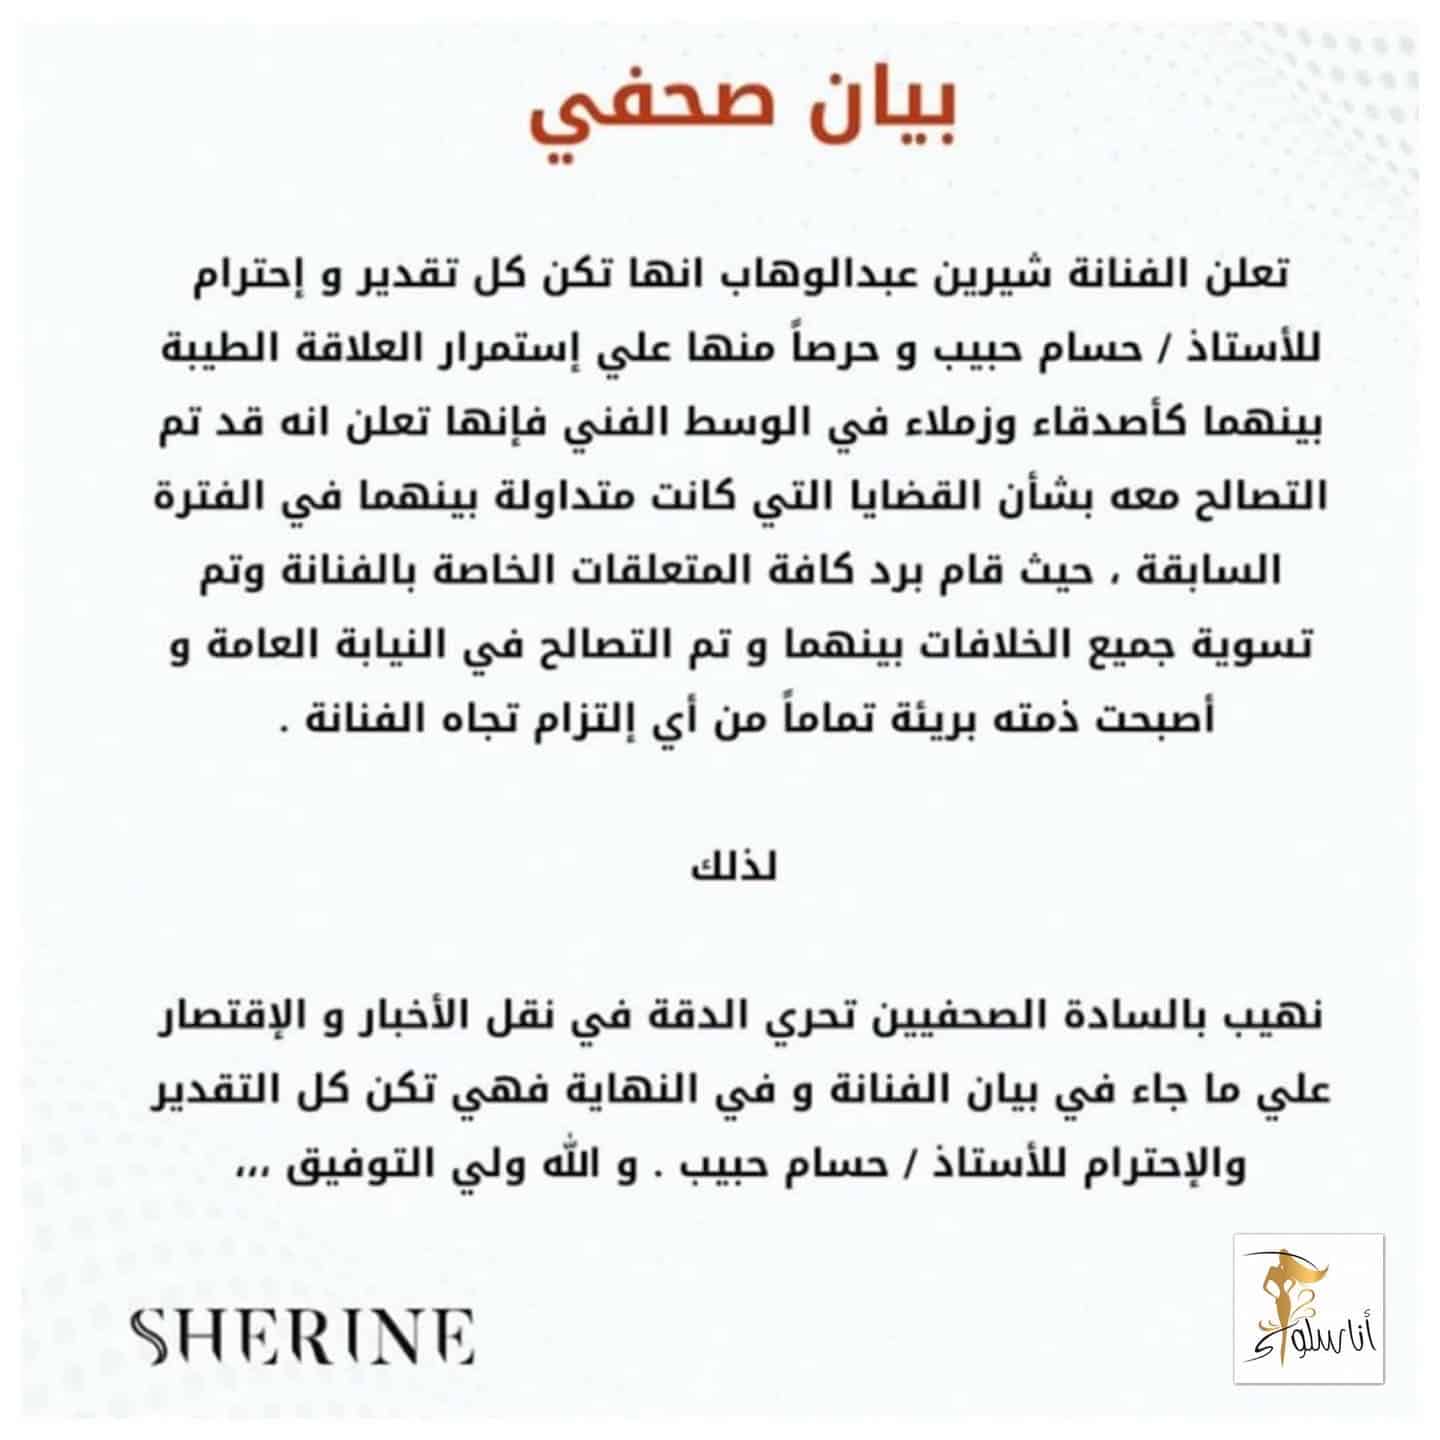 Συμφιλίωση Sherine Abdel Wahab και Hussam Habib